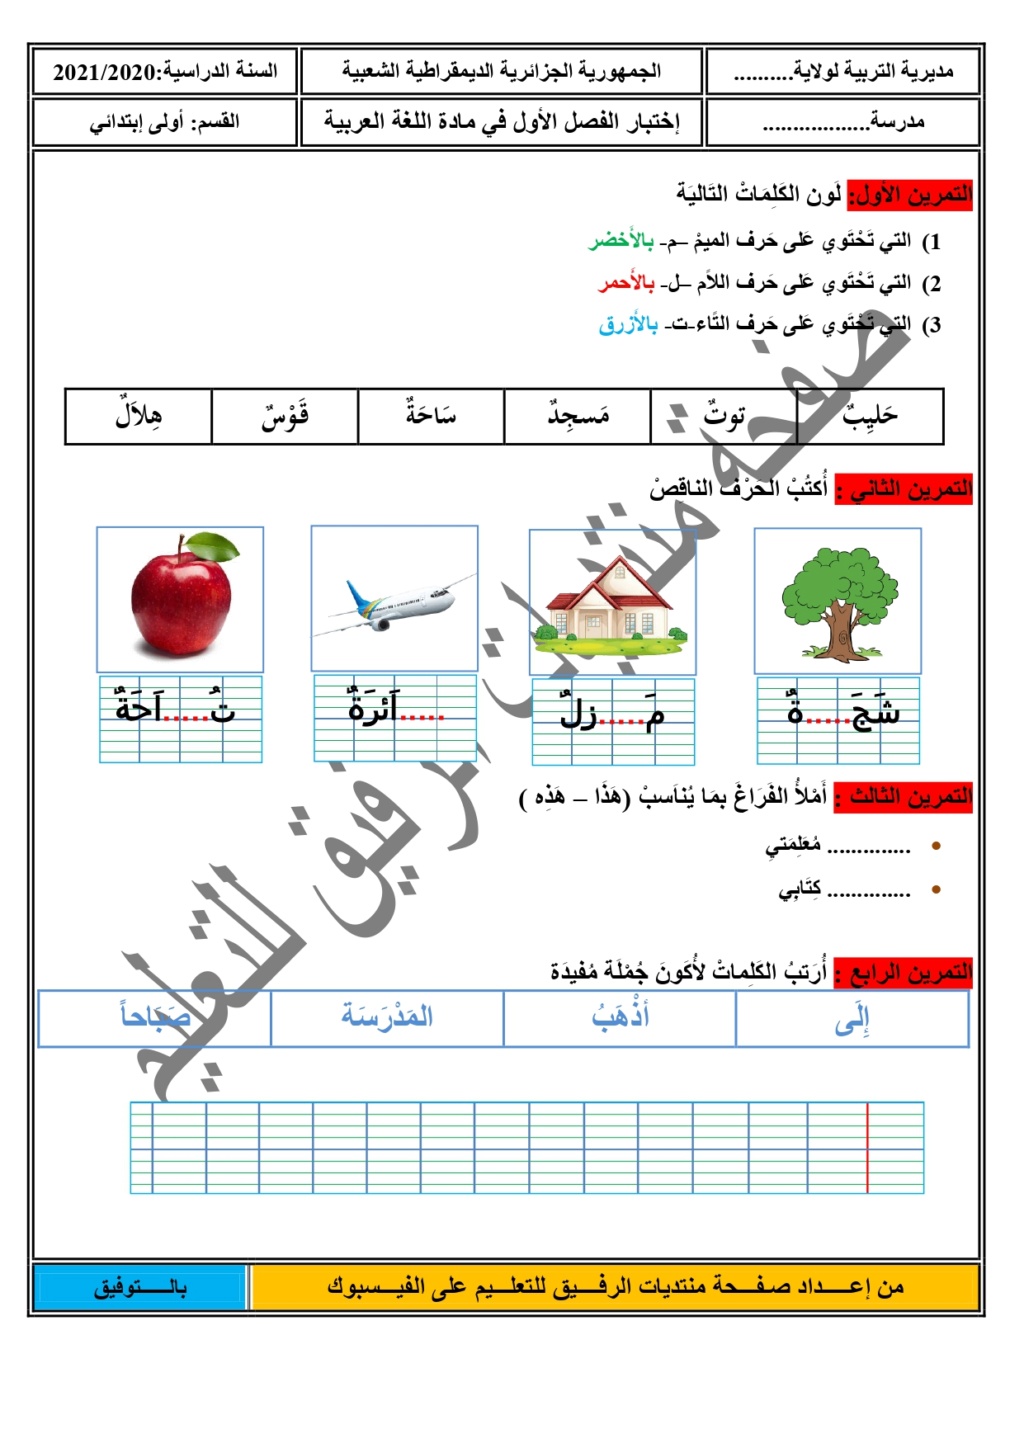 إختبار في اللغة العربية للفصل الأول للسنة أولى ابتدائي من إعداد صفحة منتديات الرفيق للتعليم بصيغة وورد Oaioa_10